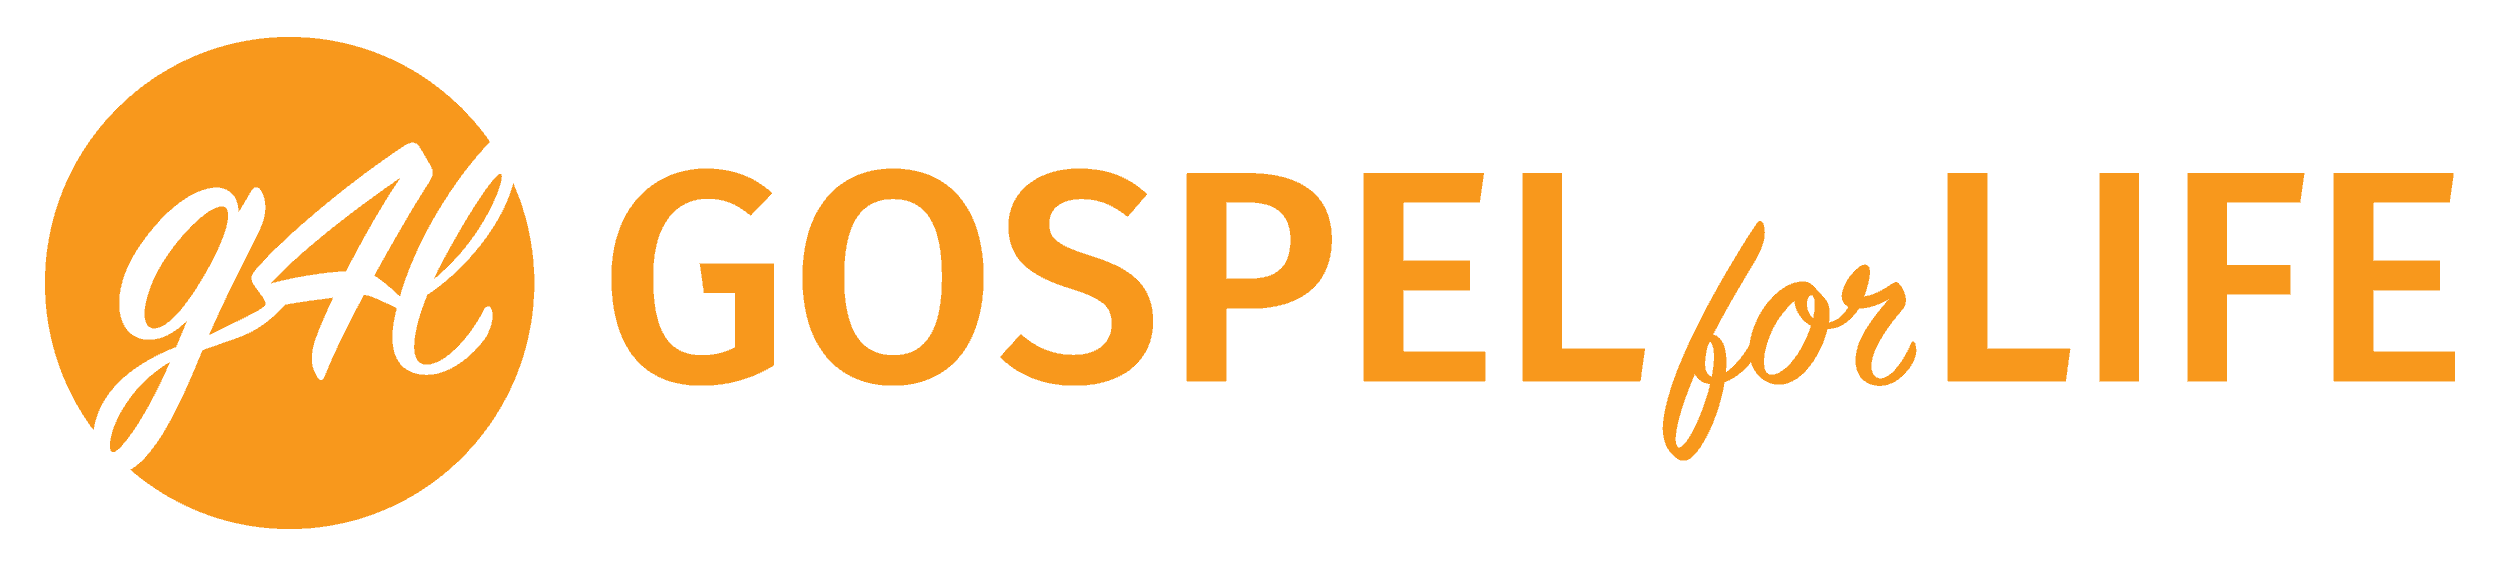 Gospel for Life